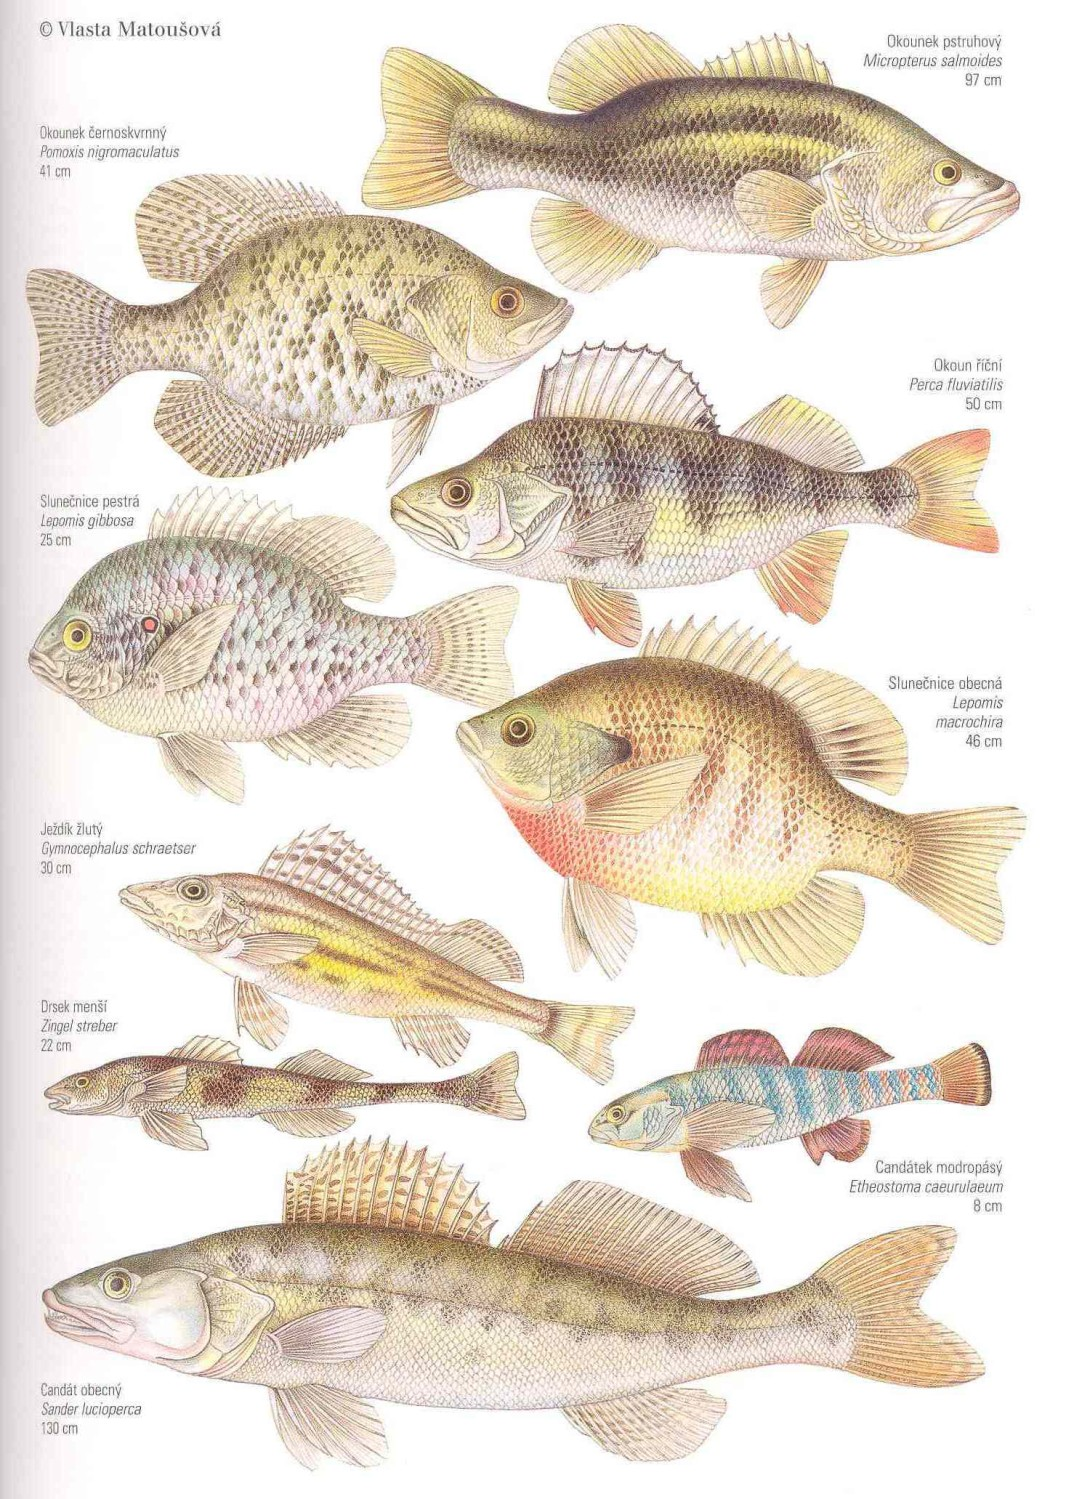 Řád: OSTNOPLOUTVÍ Perciformes Ryby všech typů vod, ktenoidní šupiny, více tvrdých paprsků v ploutvích, hřbetní ploutev často dvoudílná, Physoclisti.